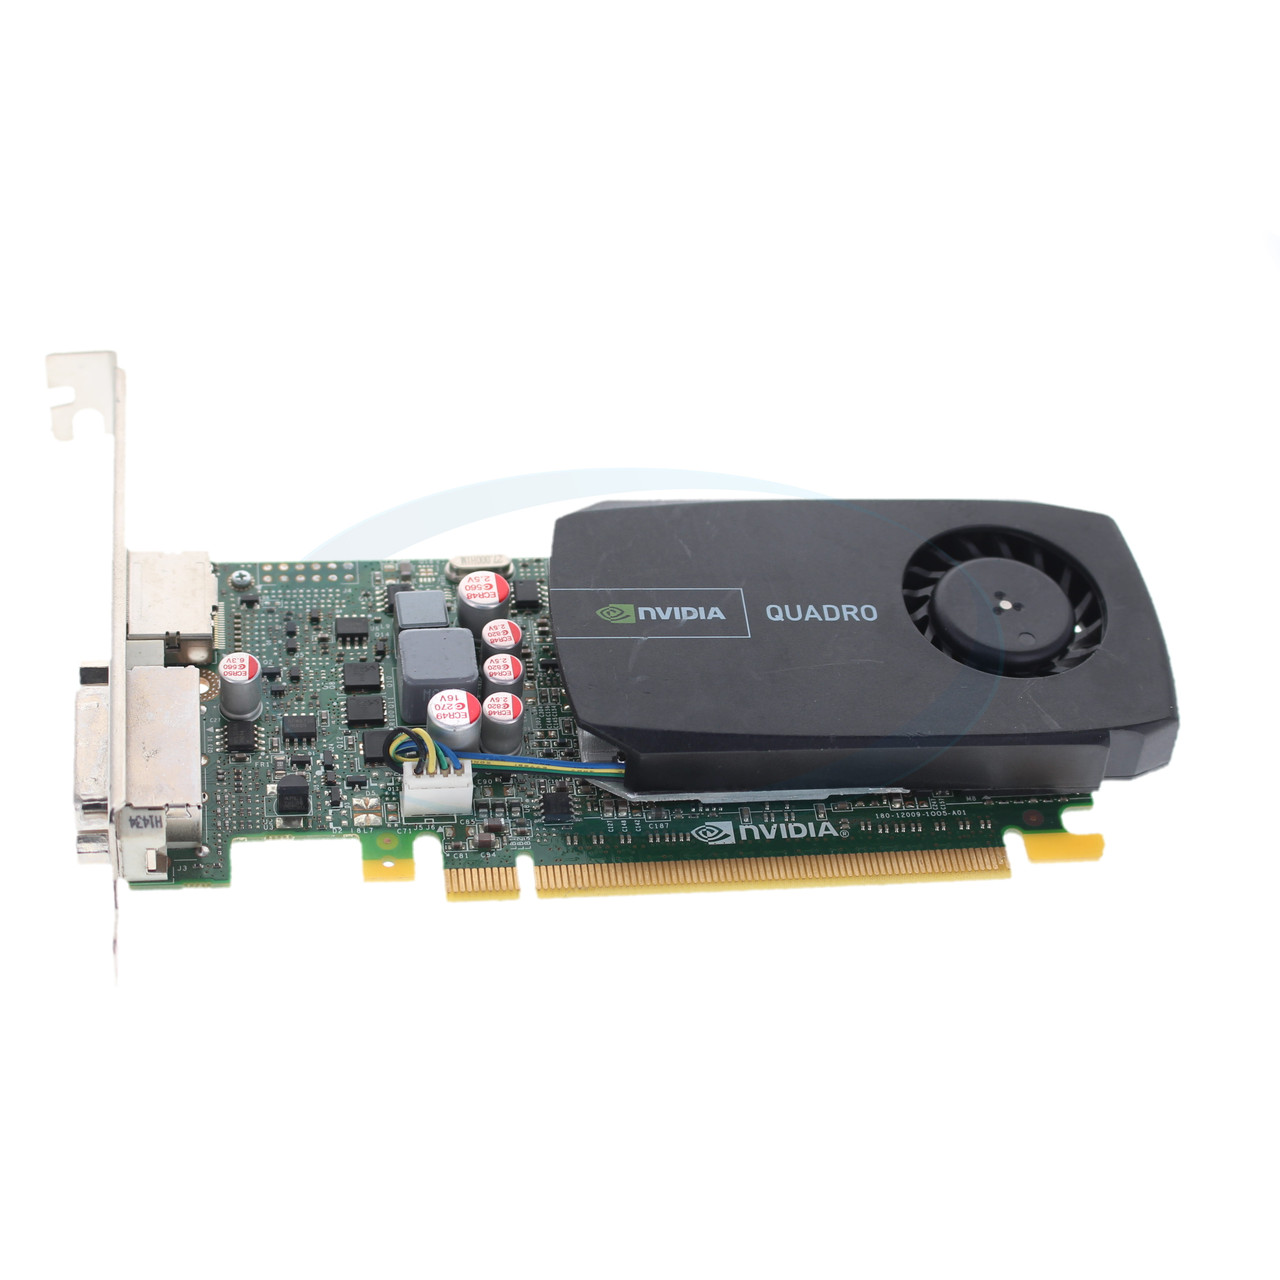 PWG0F DELL NVIDIA QUADRO 600 1GB GDDR3 PCI-E 2.0 x16 1-DVI 1-DPVIDEO CARD